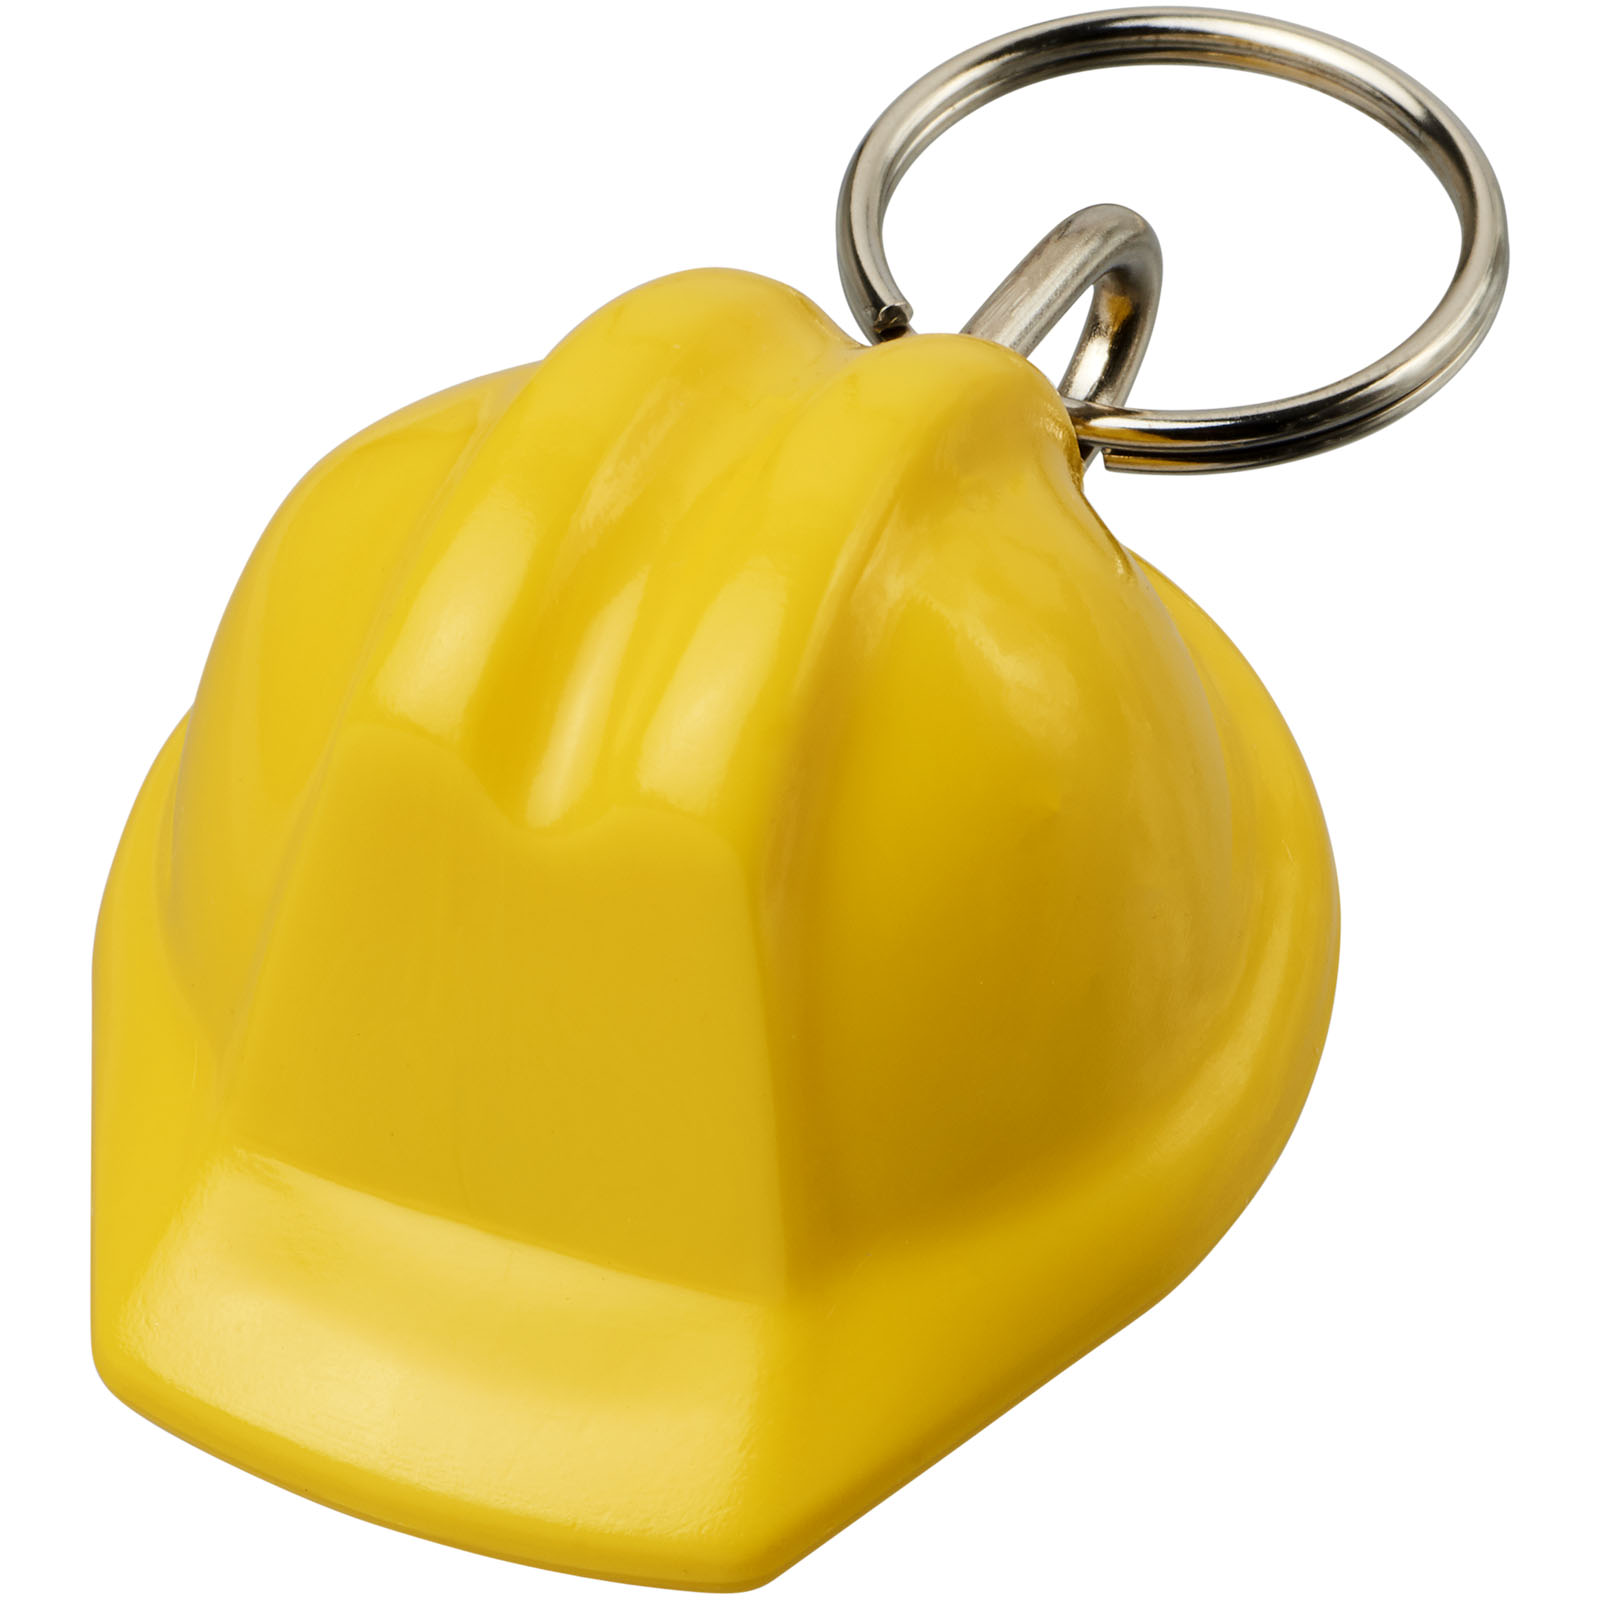 Porte-clés publicitaires - Porte-clés Kolt recyclé en forme de casque de chantier